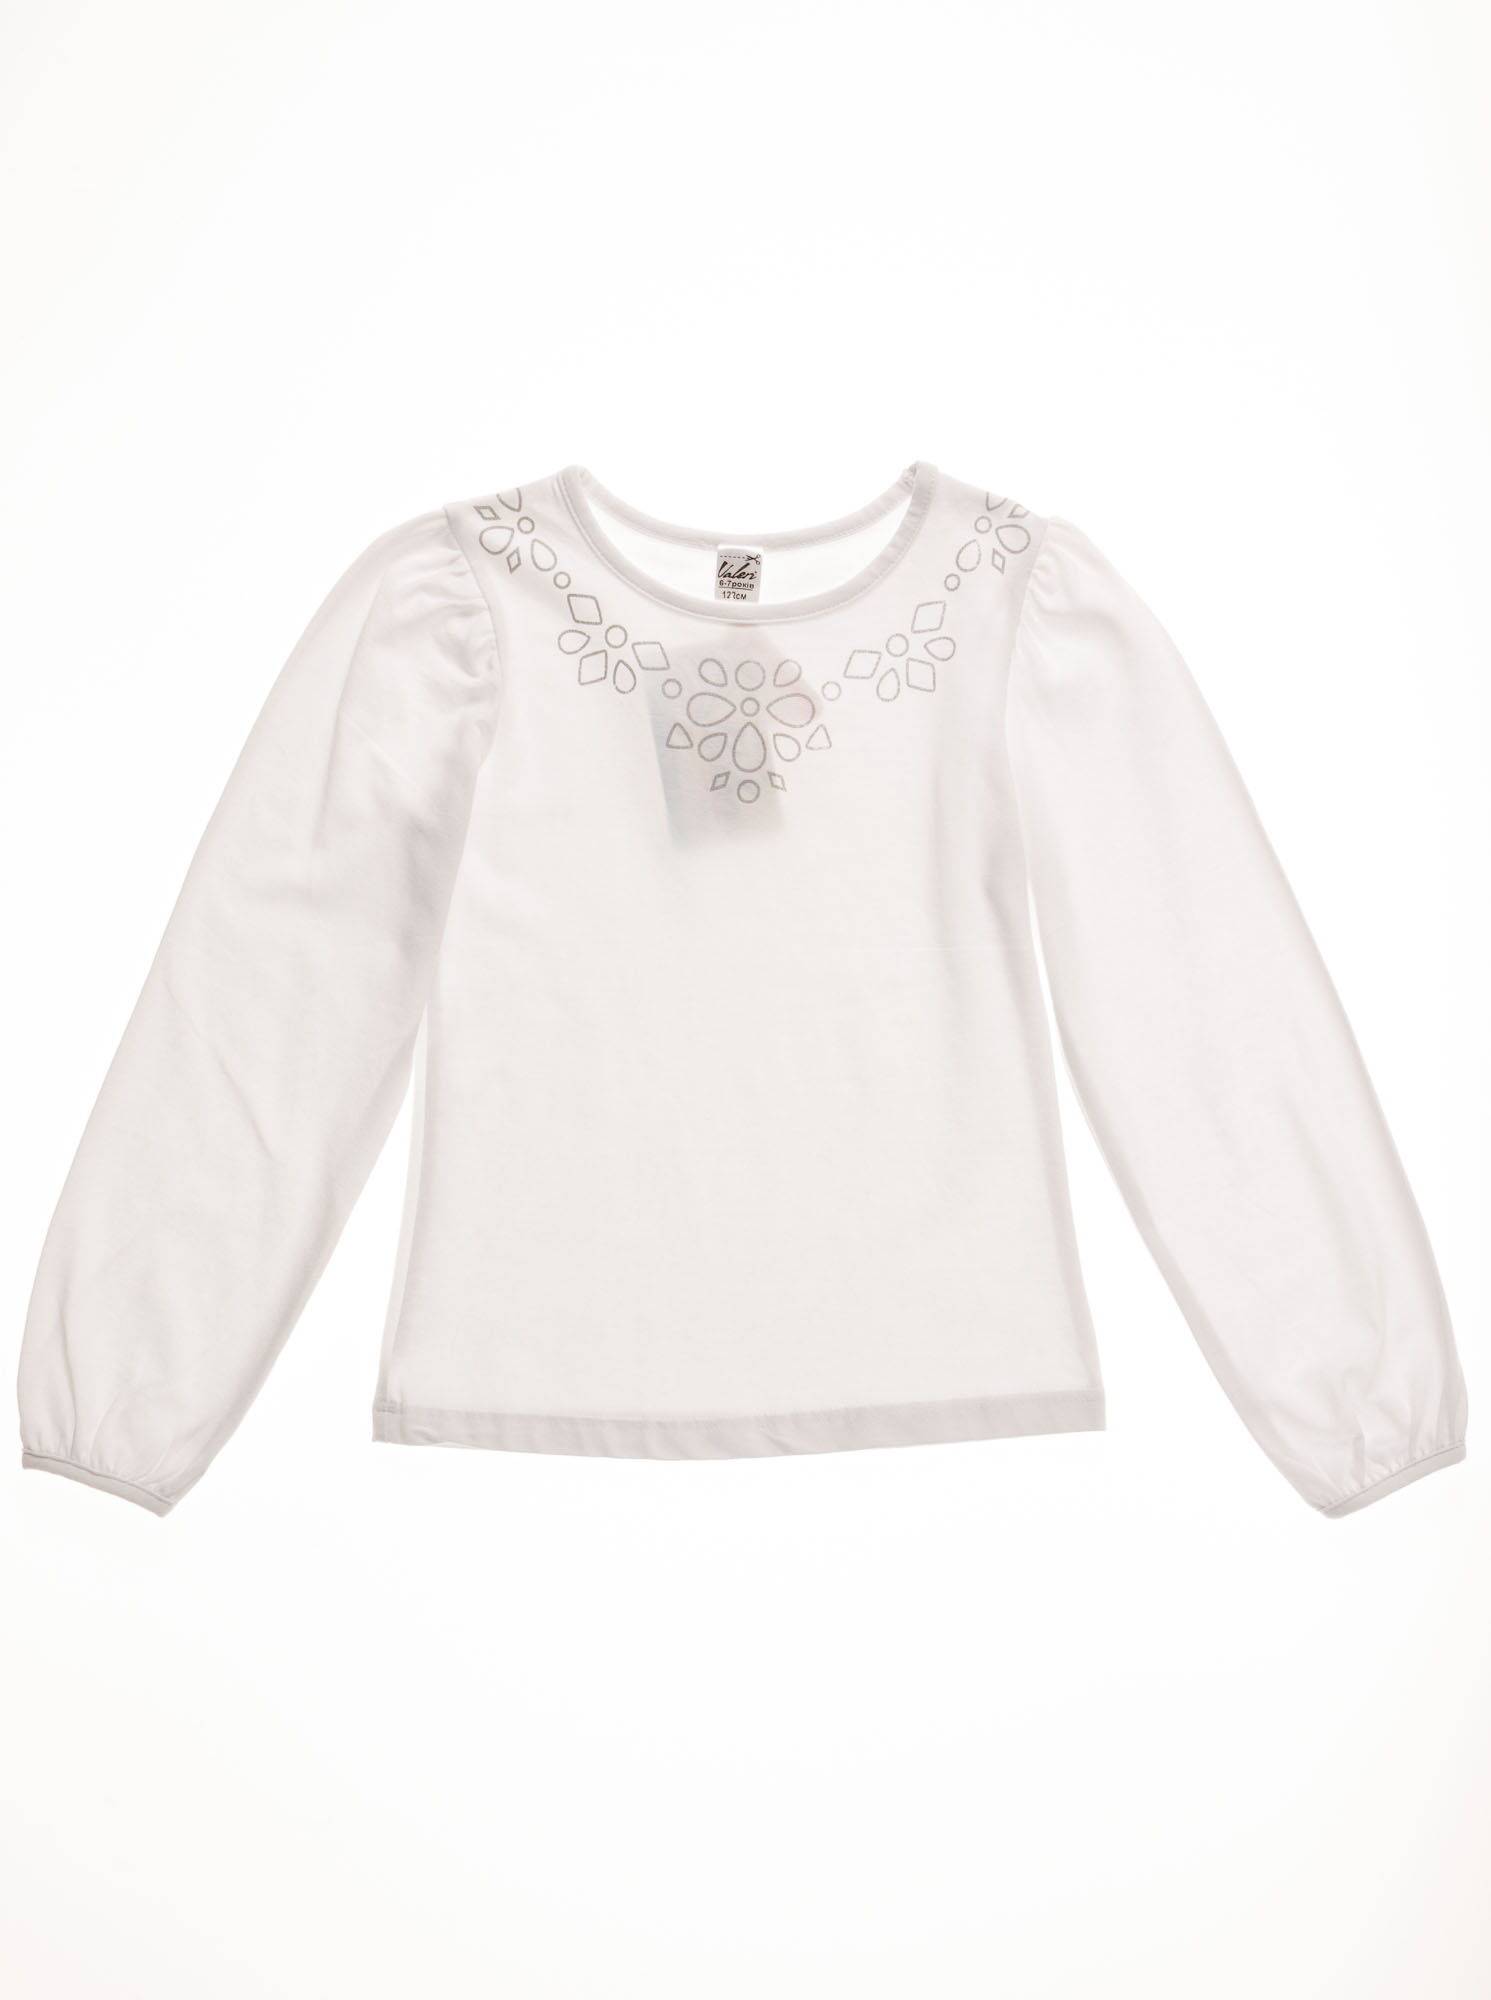 Блузка с длинным рукавом для девочки Valeri tex белая 1542-55-042 - цена